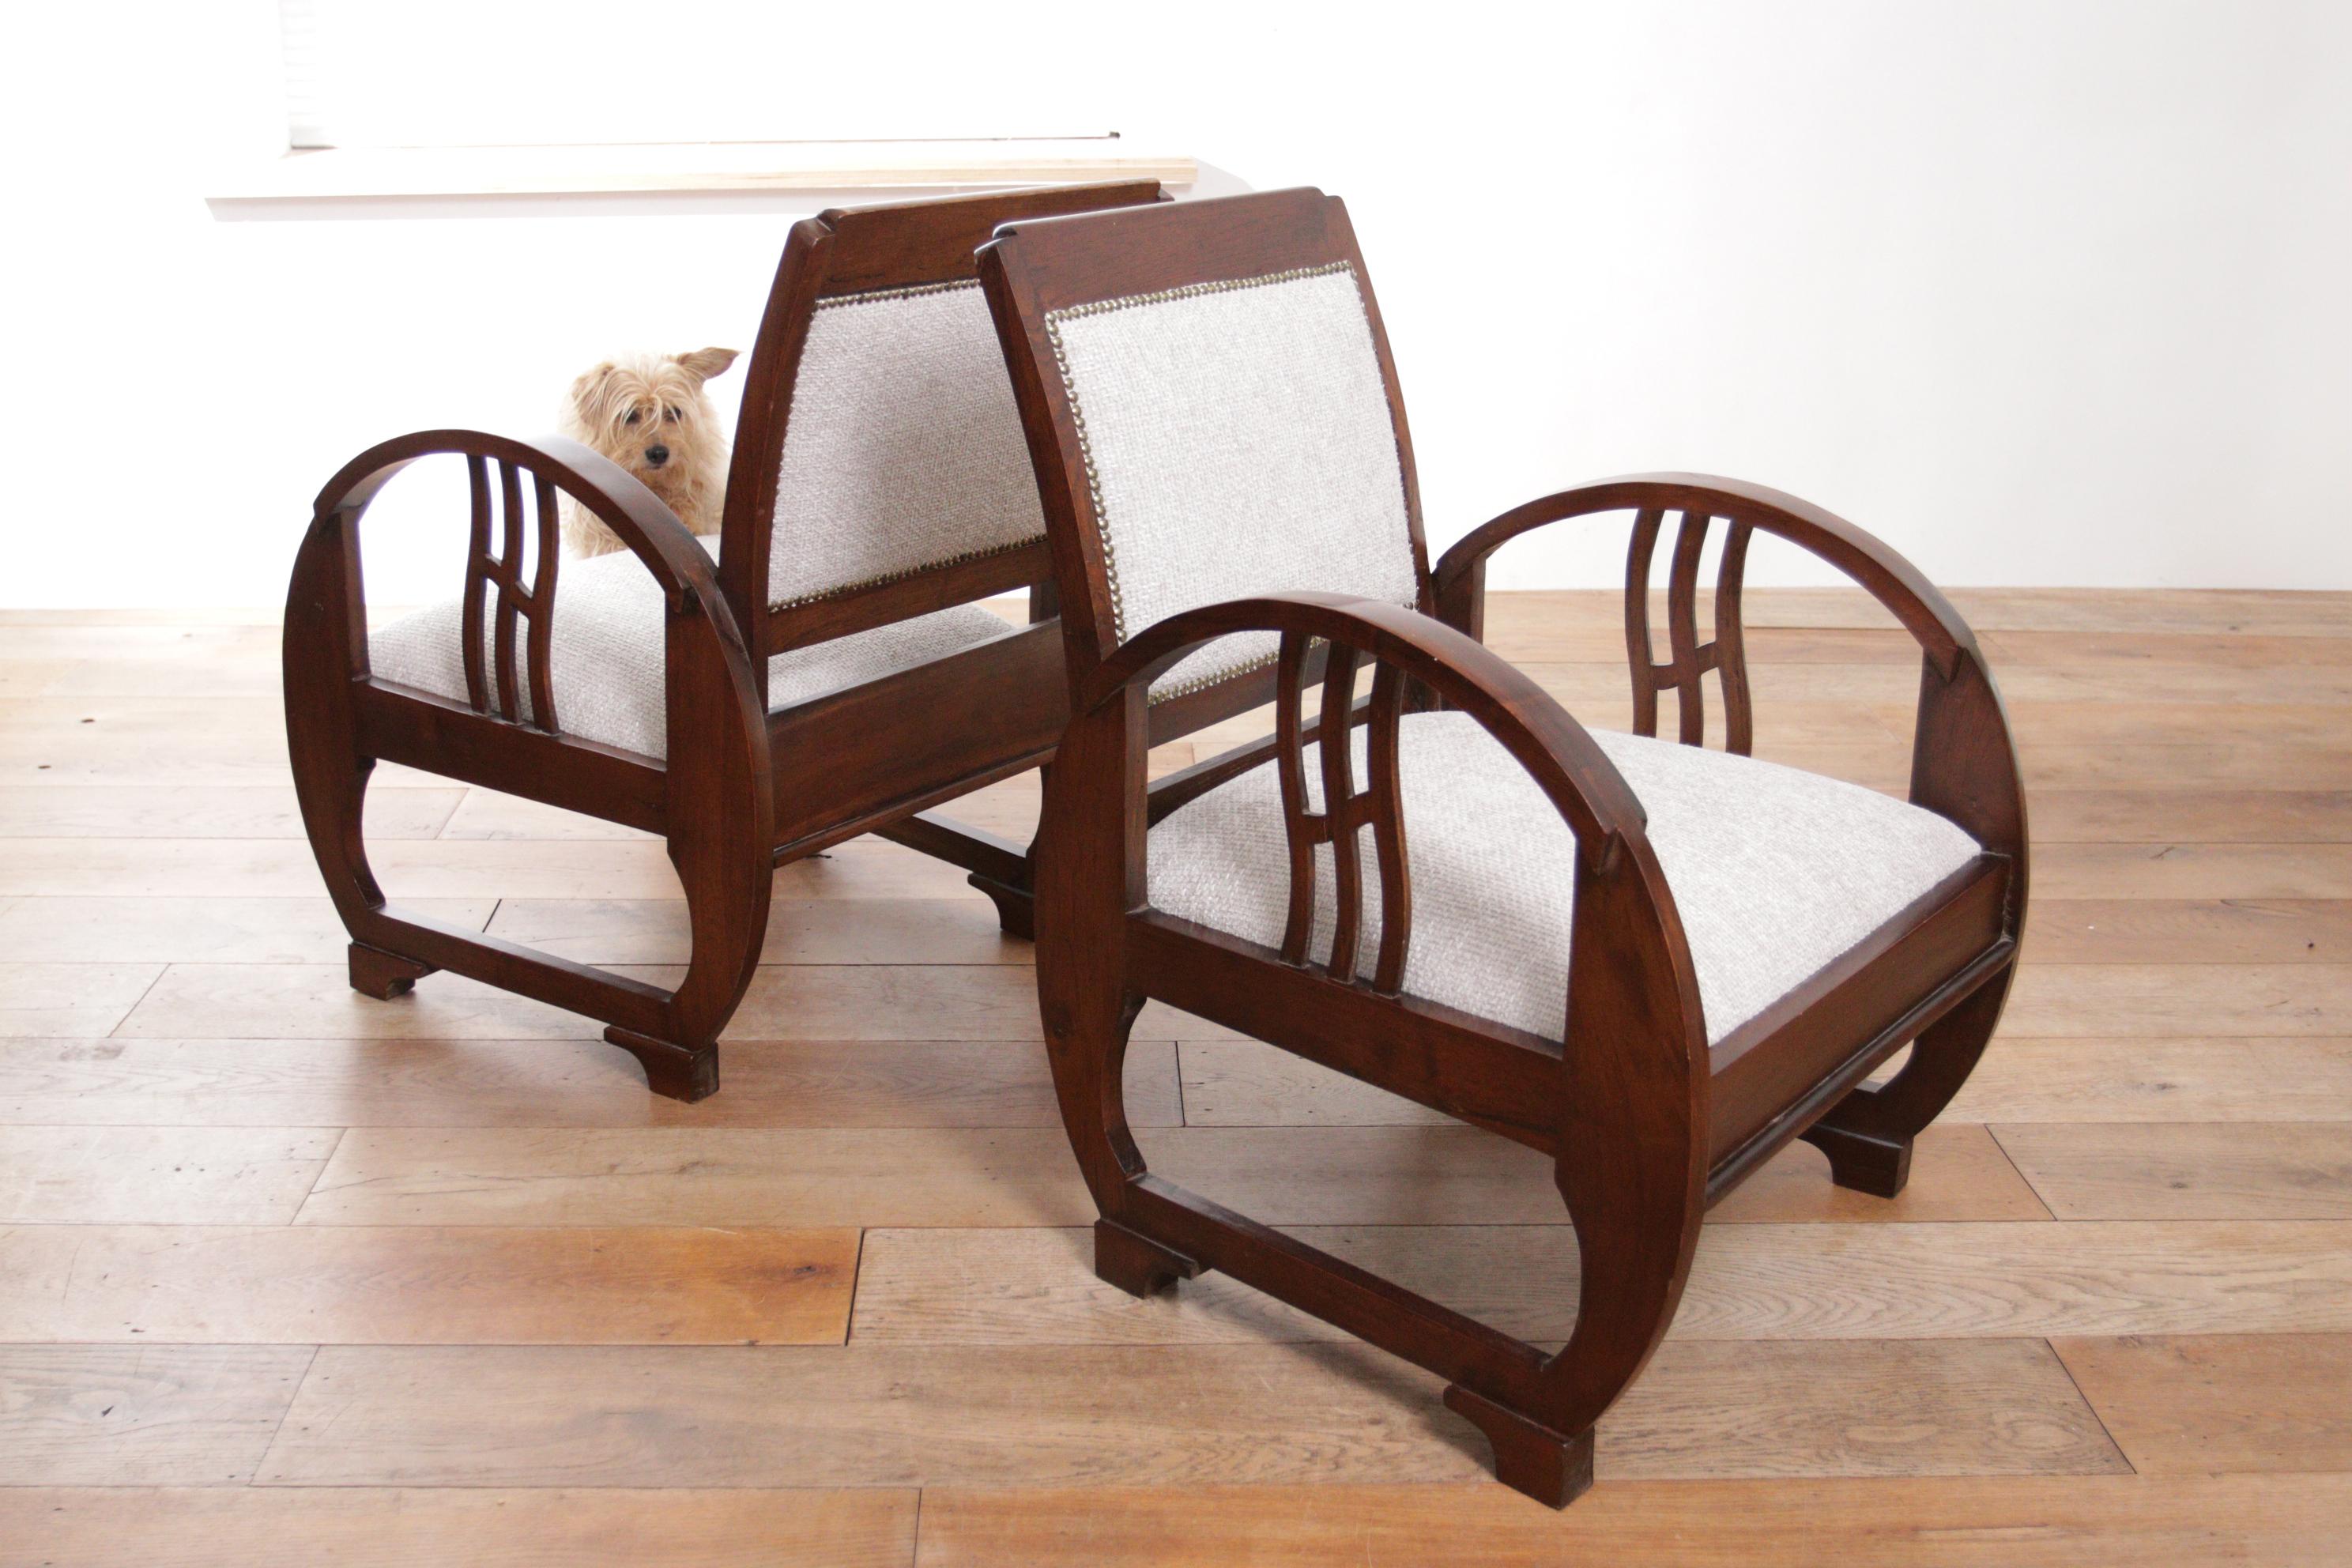 Seltene Exklusive elegante Art-Déco-Sessel aus französischem Holz, Vintage, 1930er Jahre (Stoff)